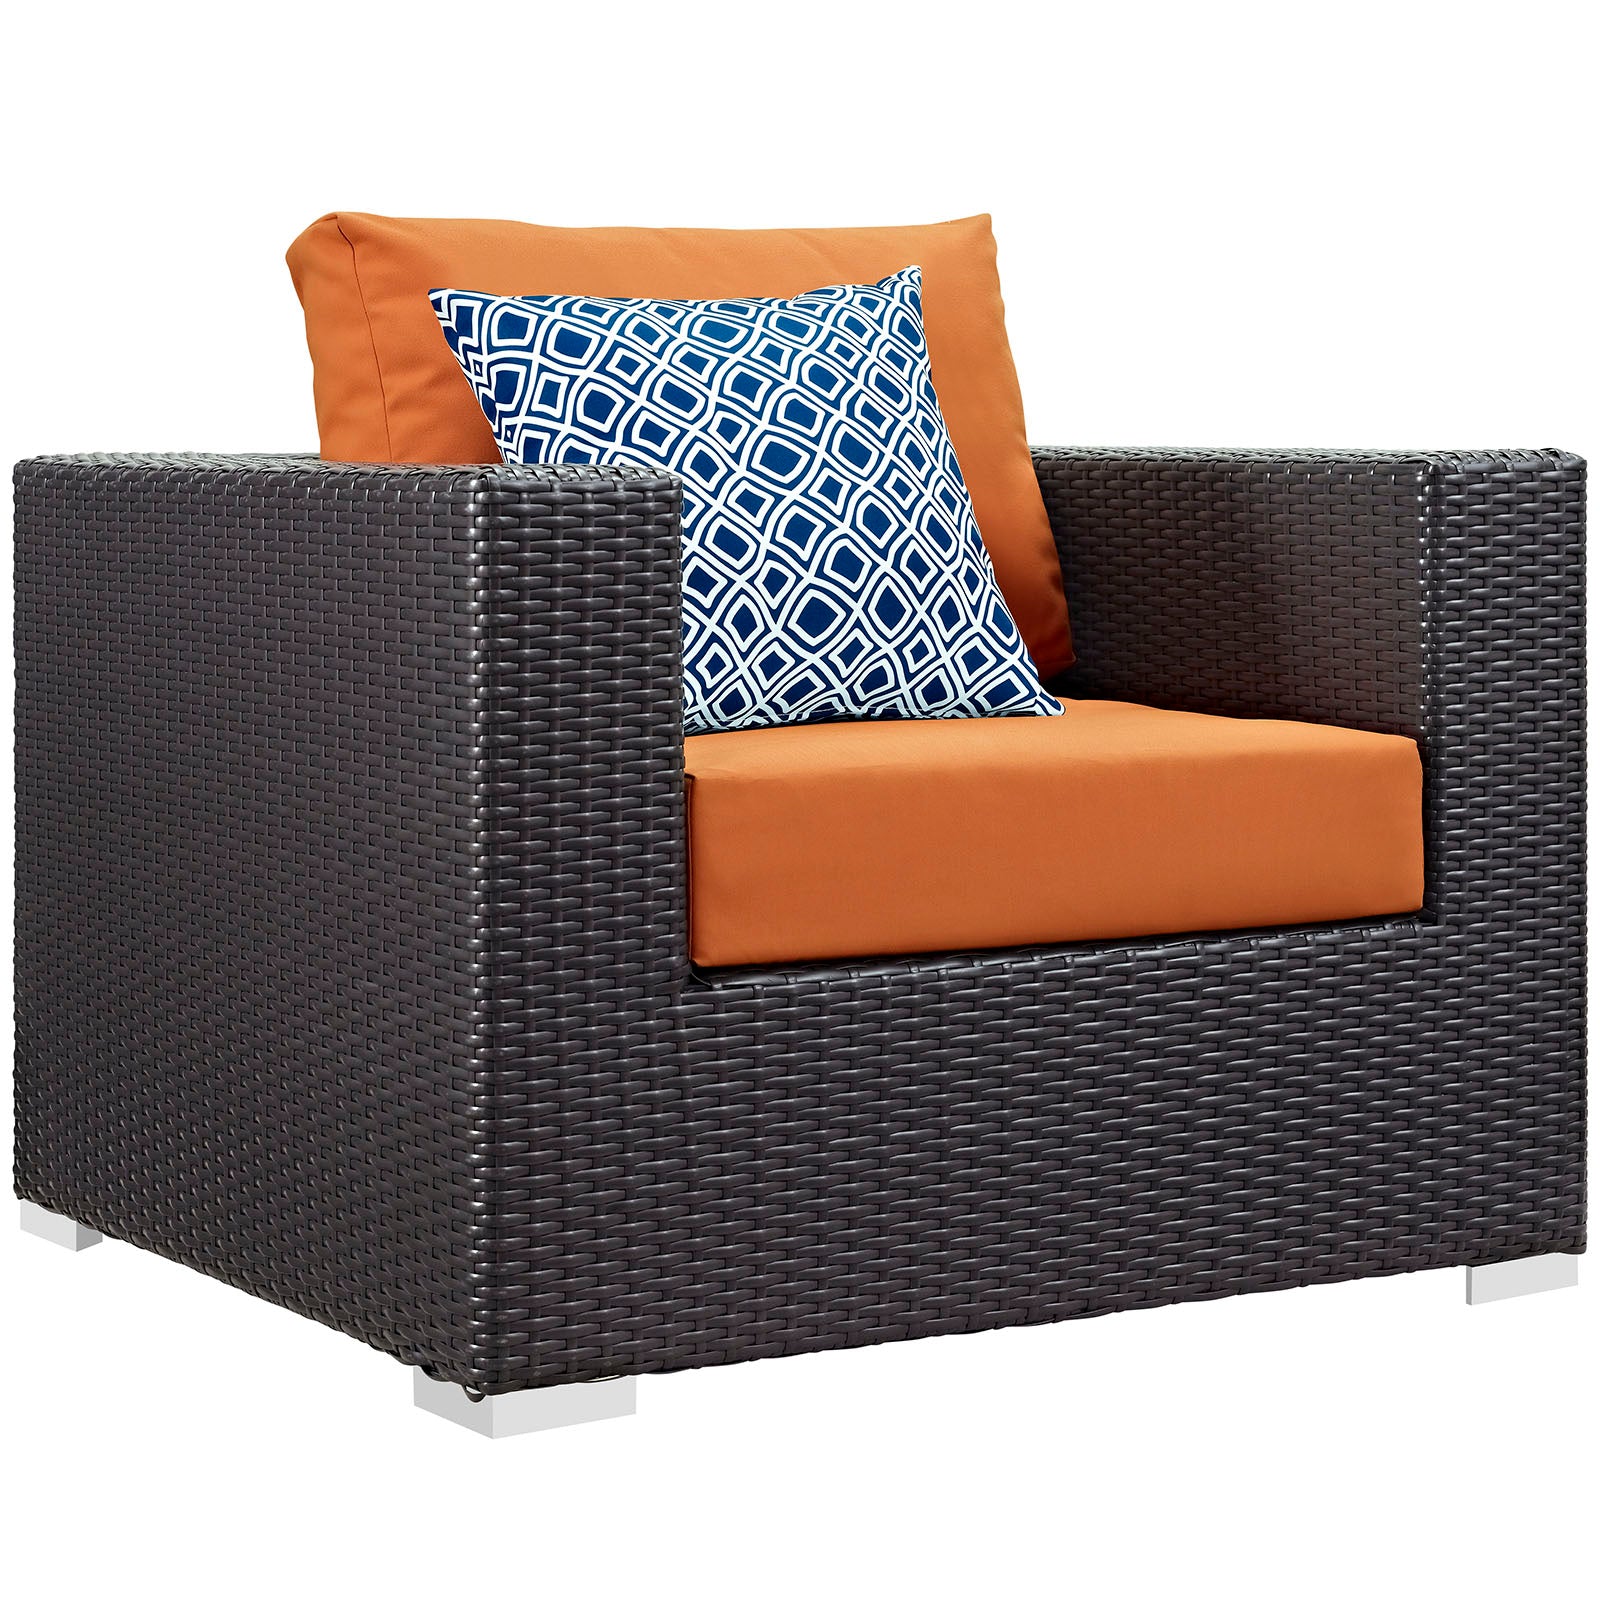 Modway Outdoor Conversation Sets - Convene 3 Piece Outdoor Patio Sofa Set Espresso & Orange